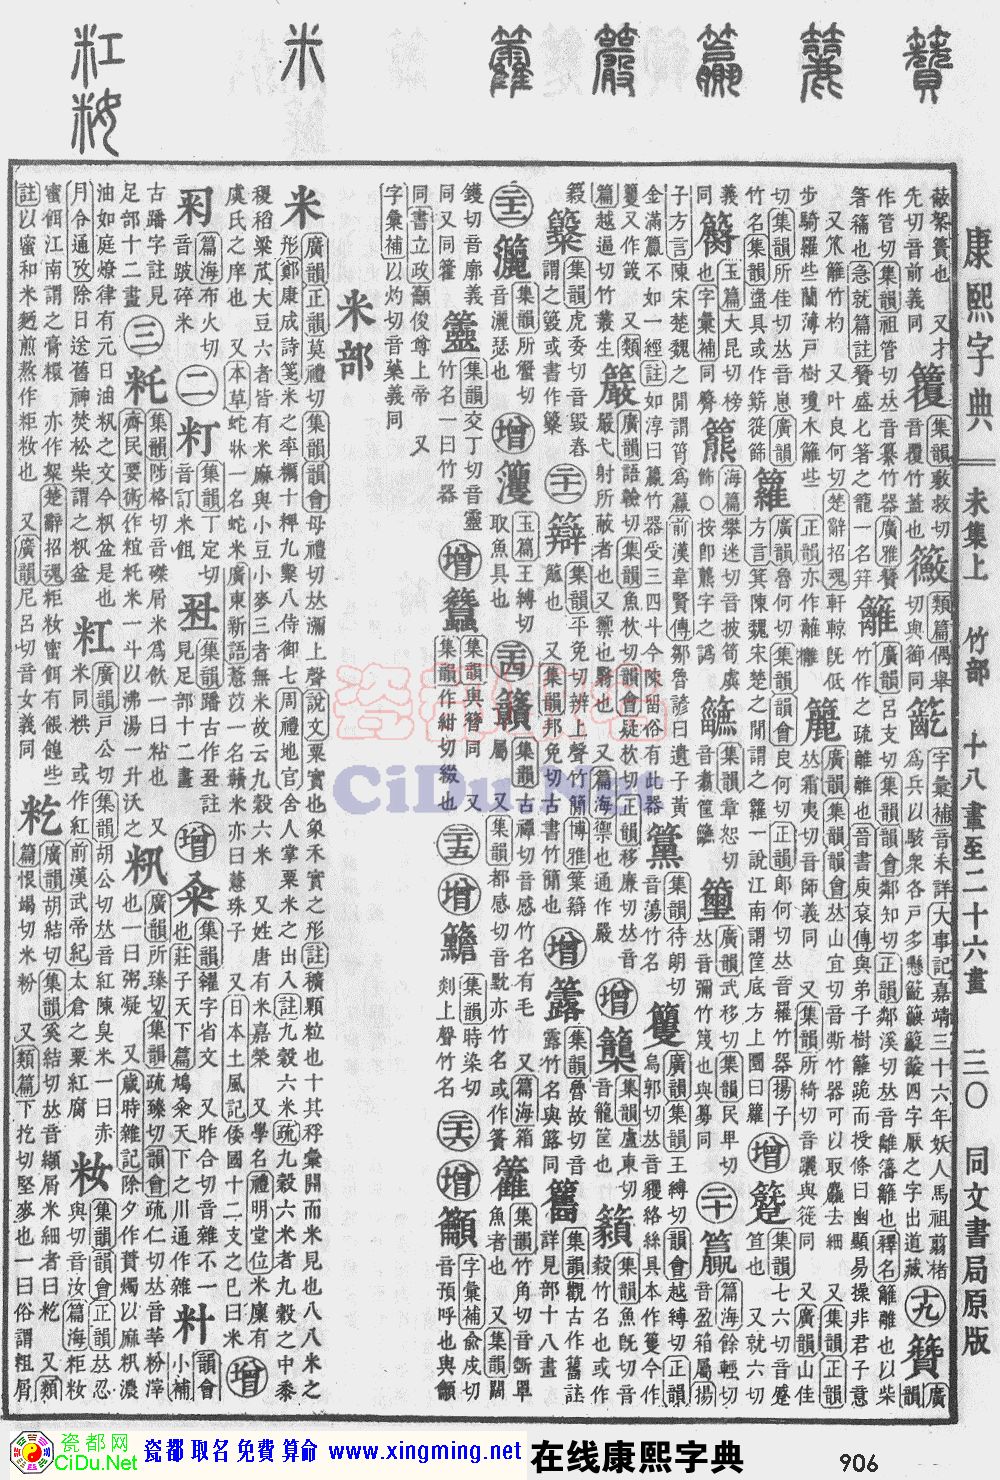 瓷都取名康熙字典原图扫描版,第906页